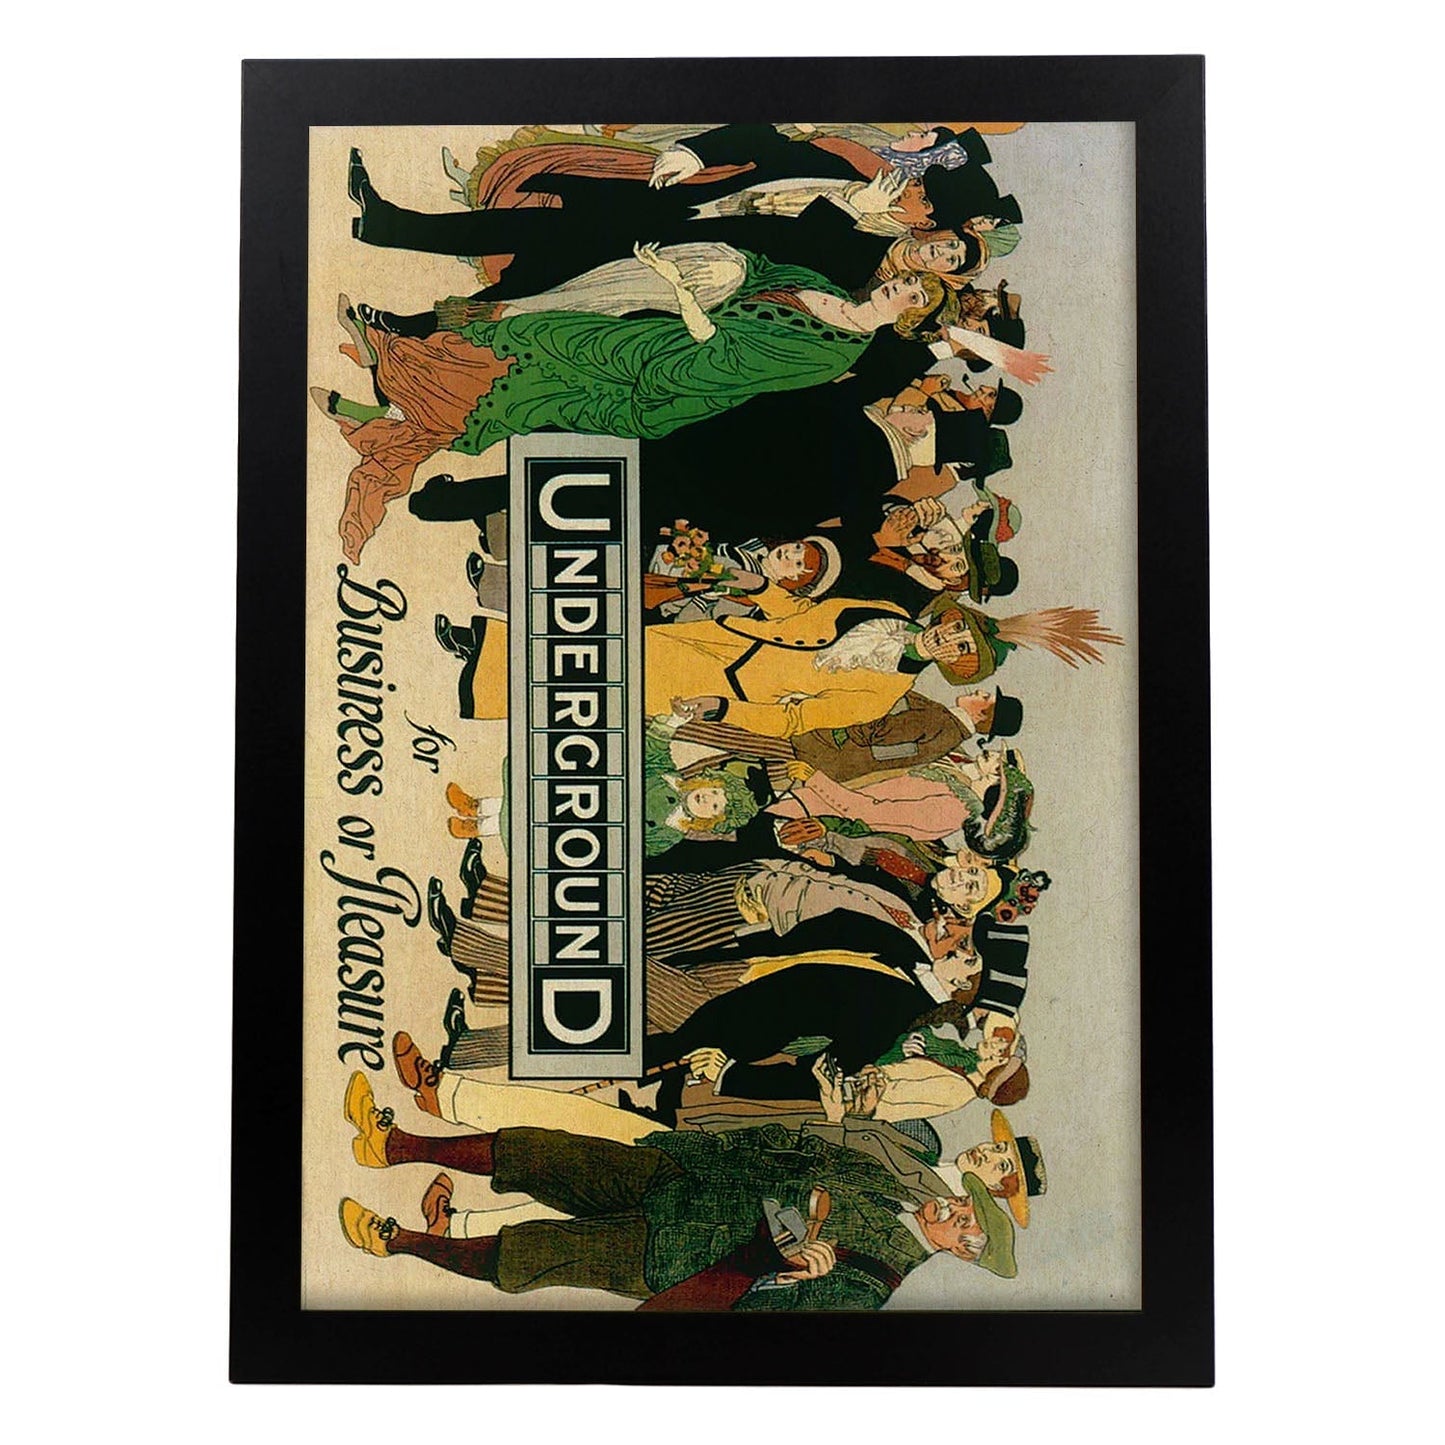 Poster vintage. Cartel vintage de Europa. Metro de Londres, 1913.-Artwork-Nacnic-A3-Marco Negro-Nacnic Estudio SL